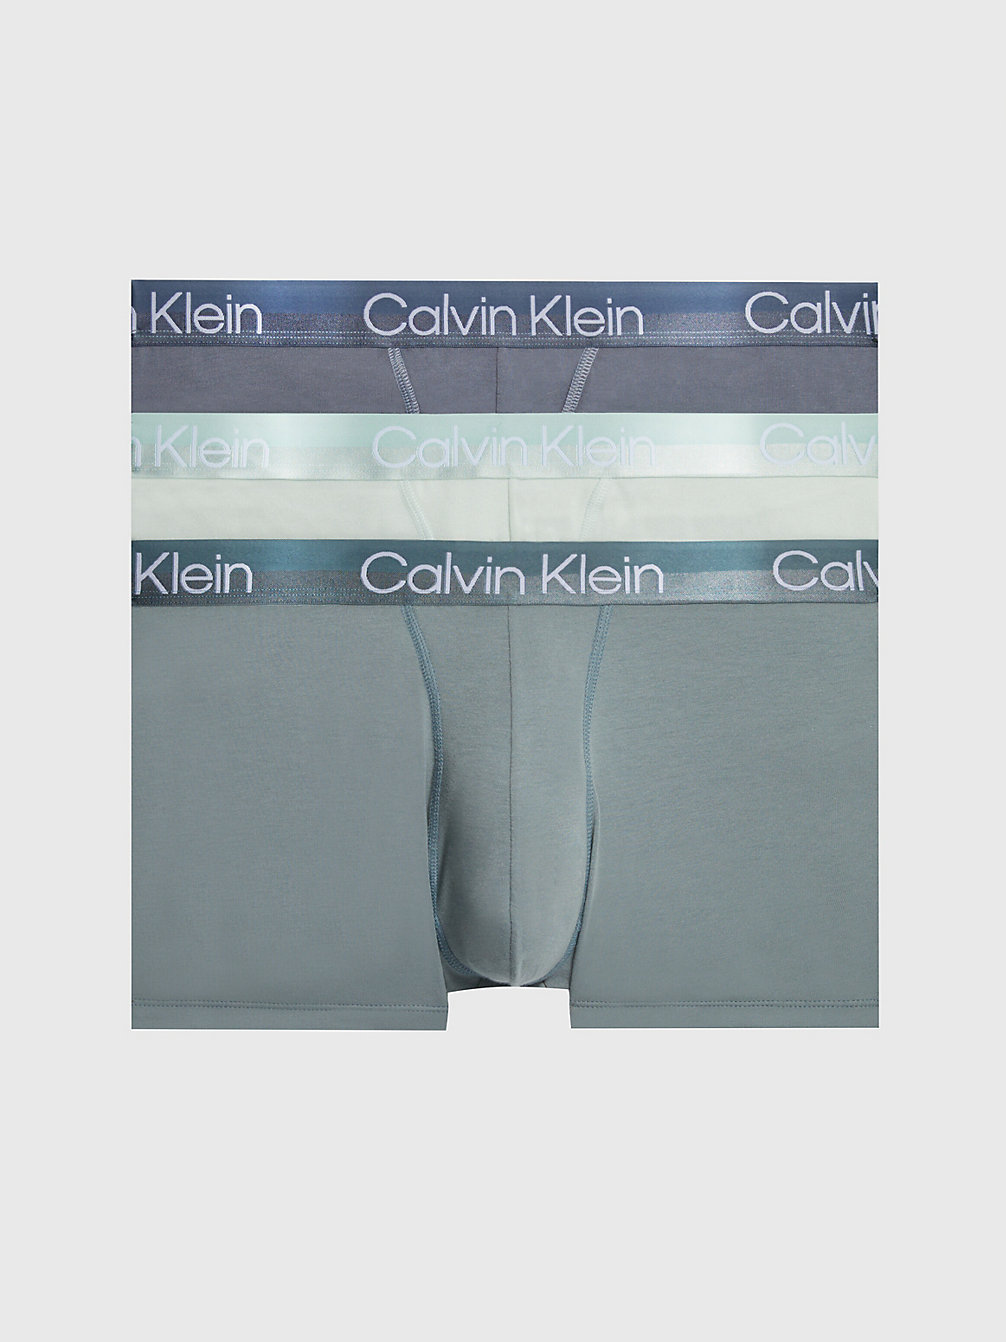 BELOVED BL, ASPHALT GRY, DRAGON FLY 3 Pack Trunks - Modern Structure undefined men Calvin Klein